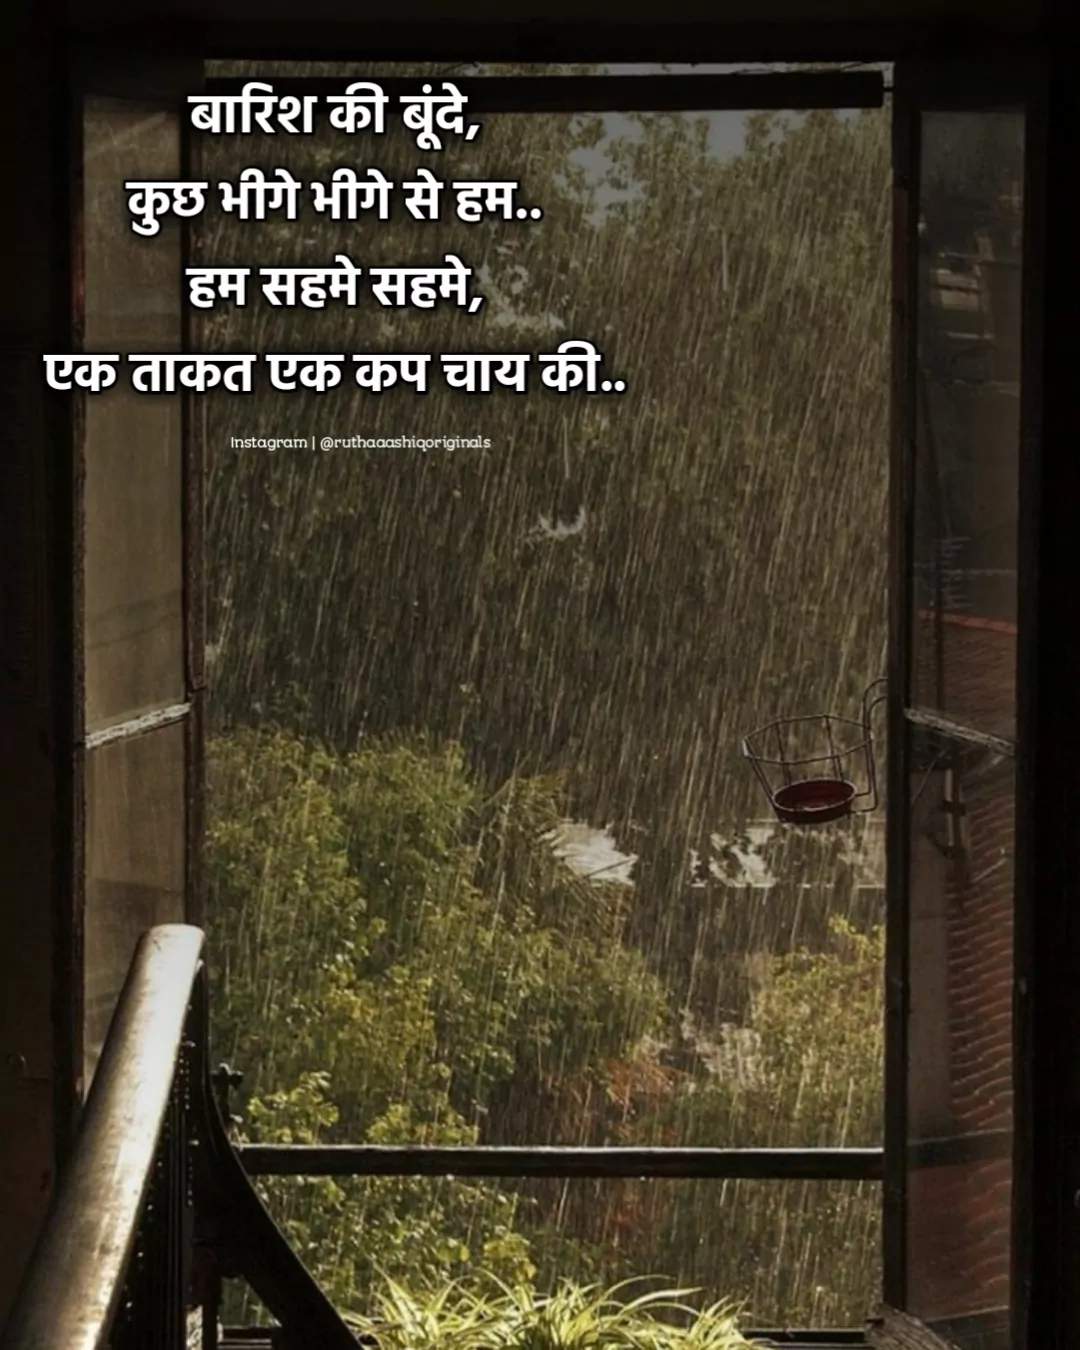 Rain Shayari in Hindi